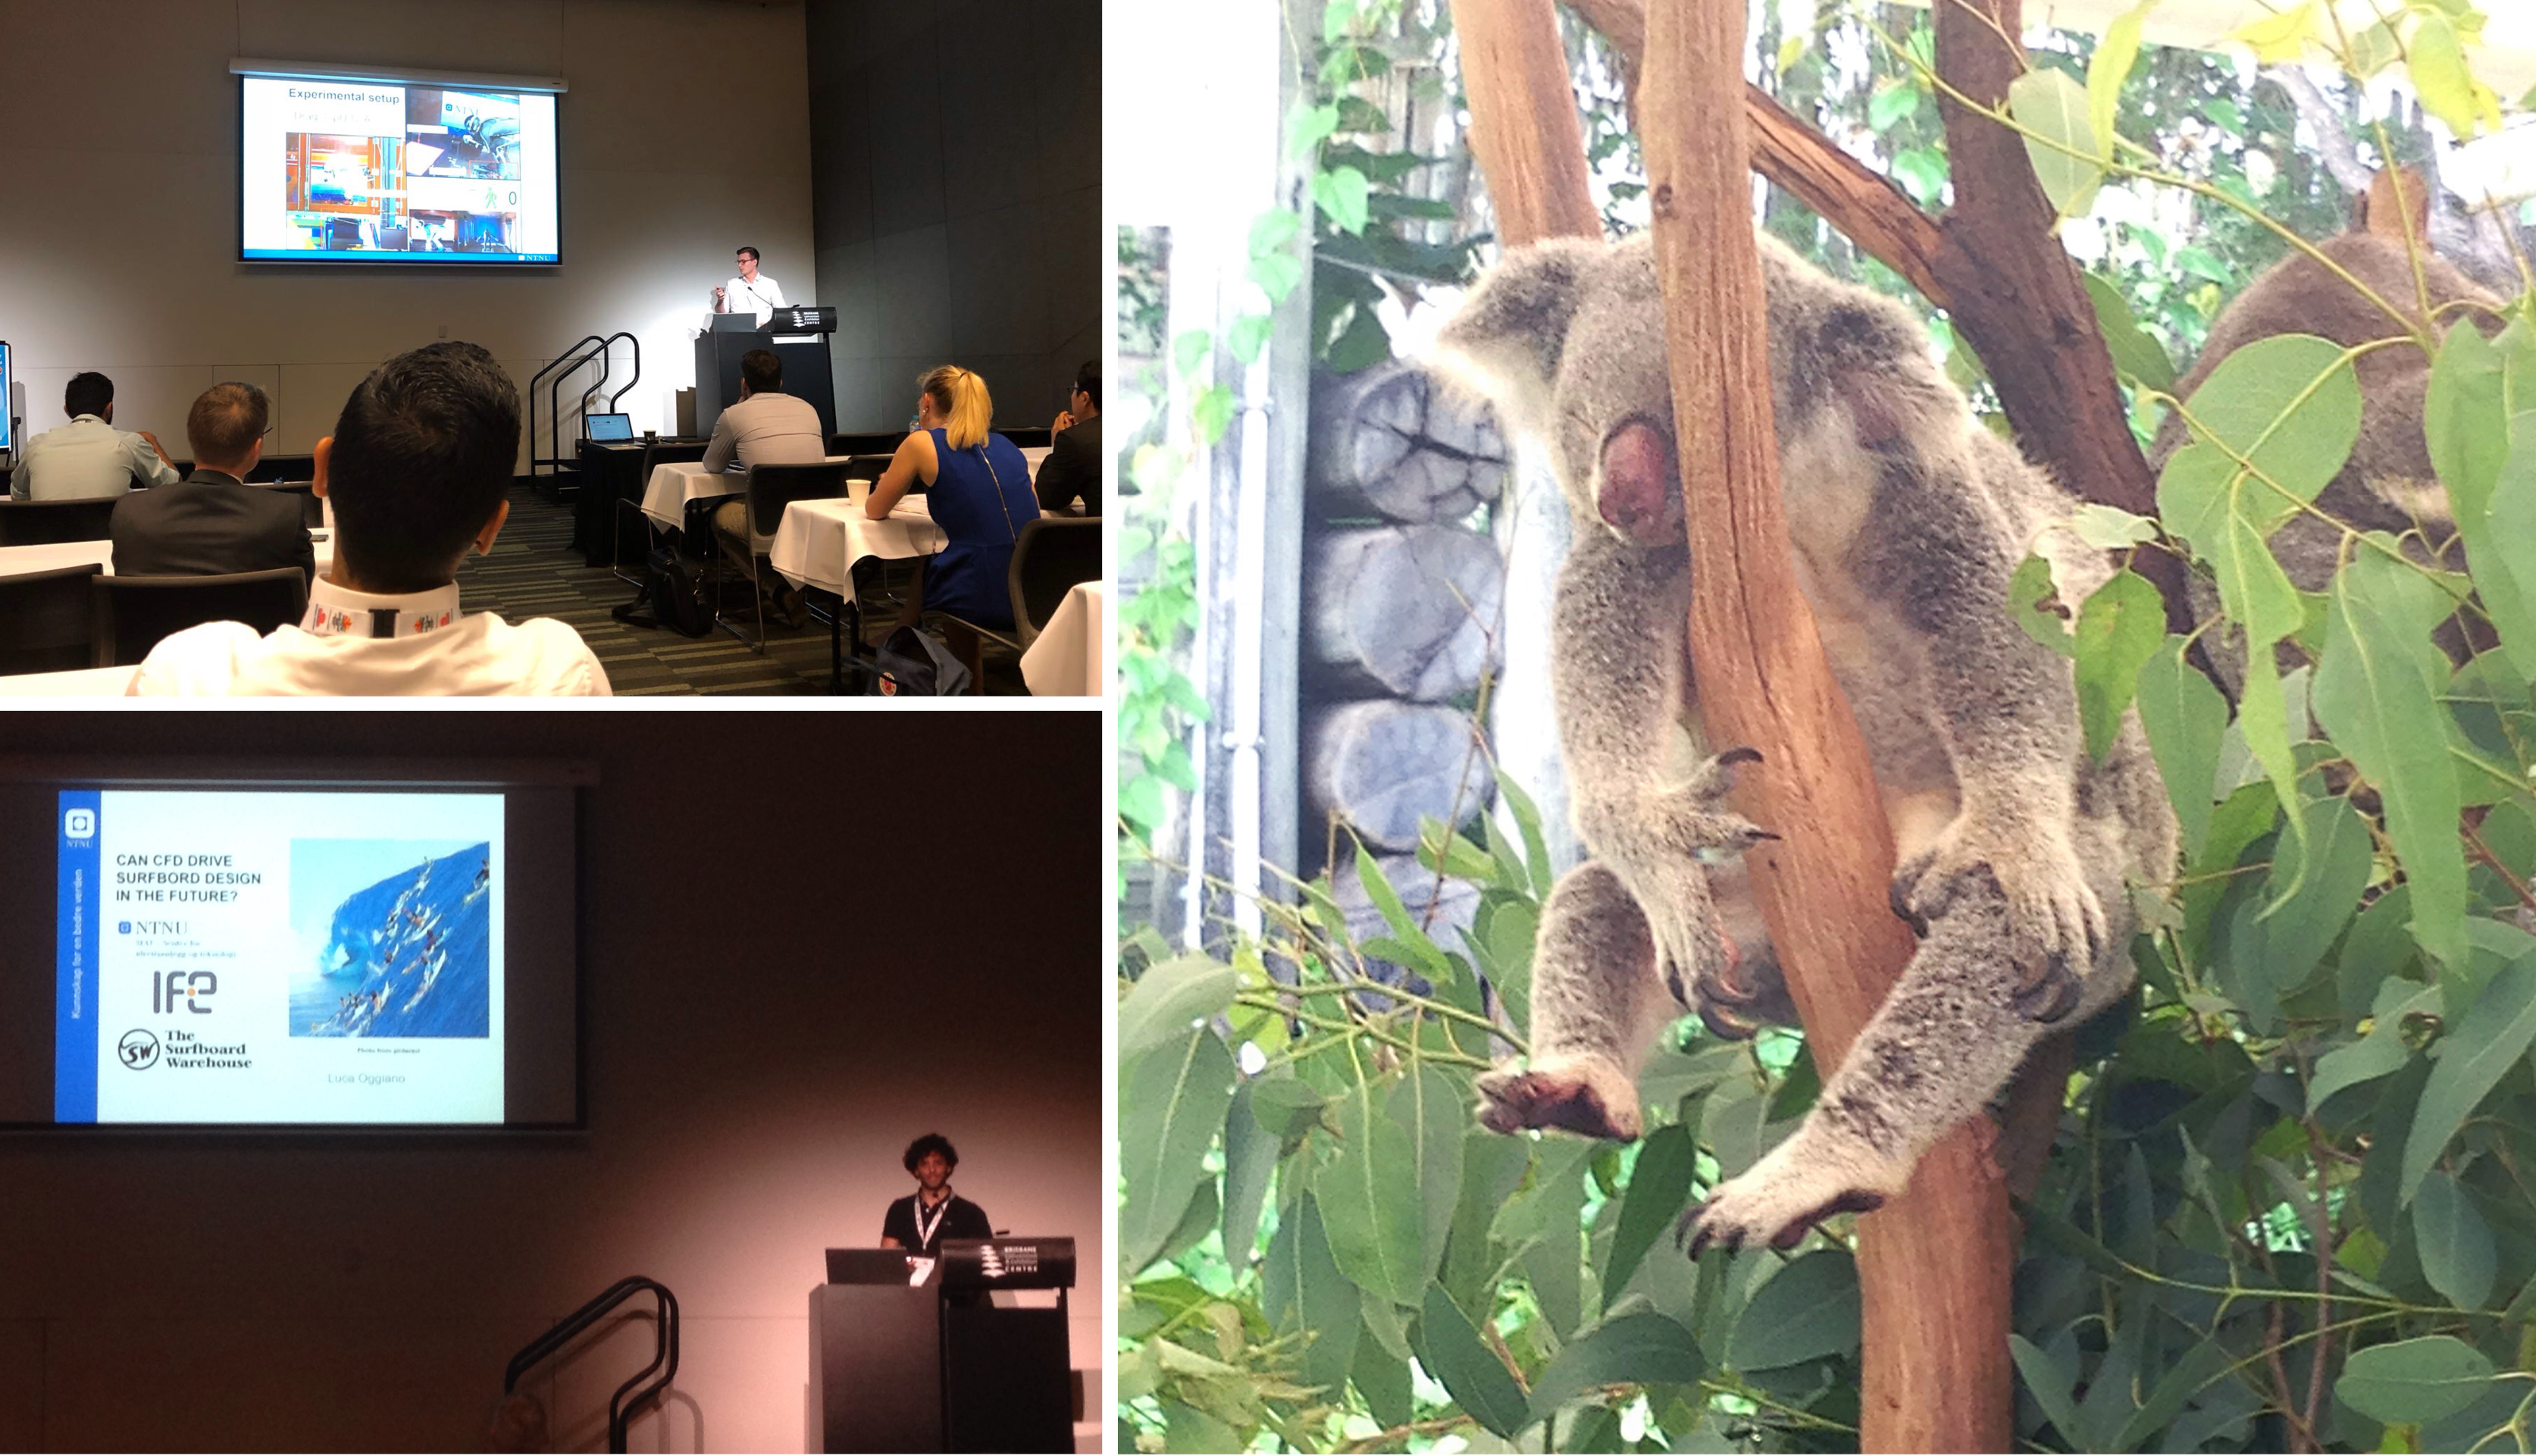 Fra forelesningssal og bilde av Koala. Foto.